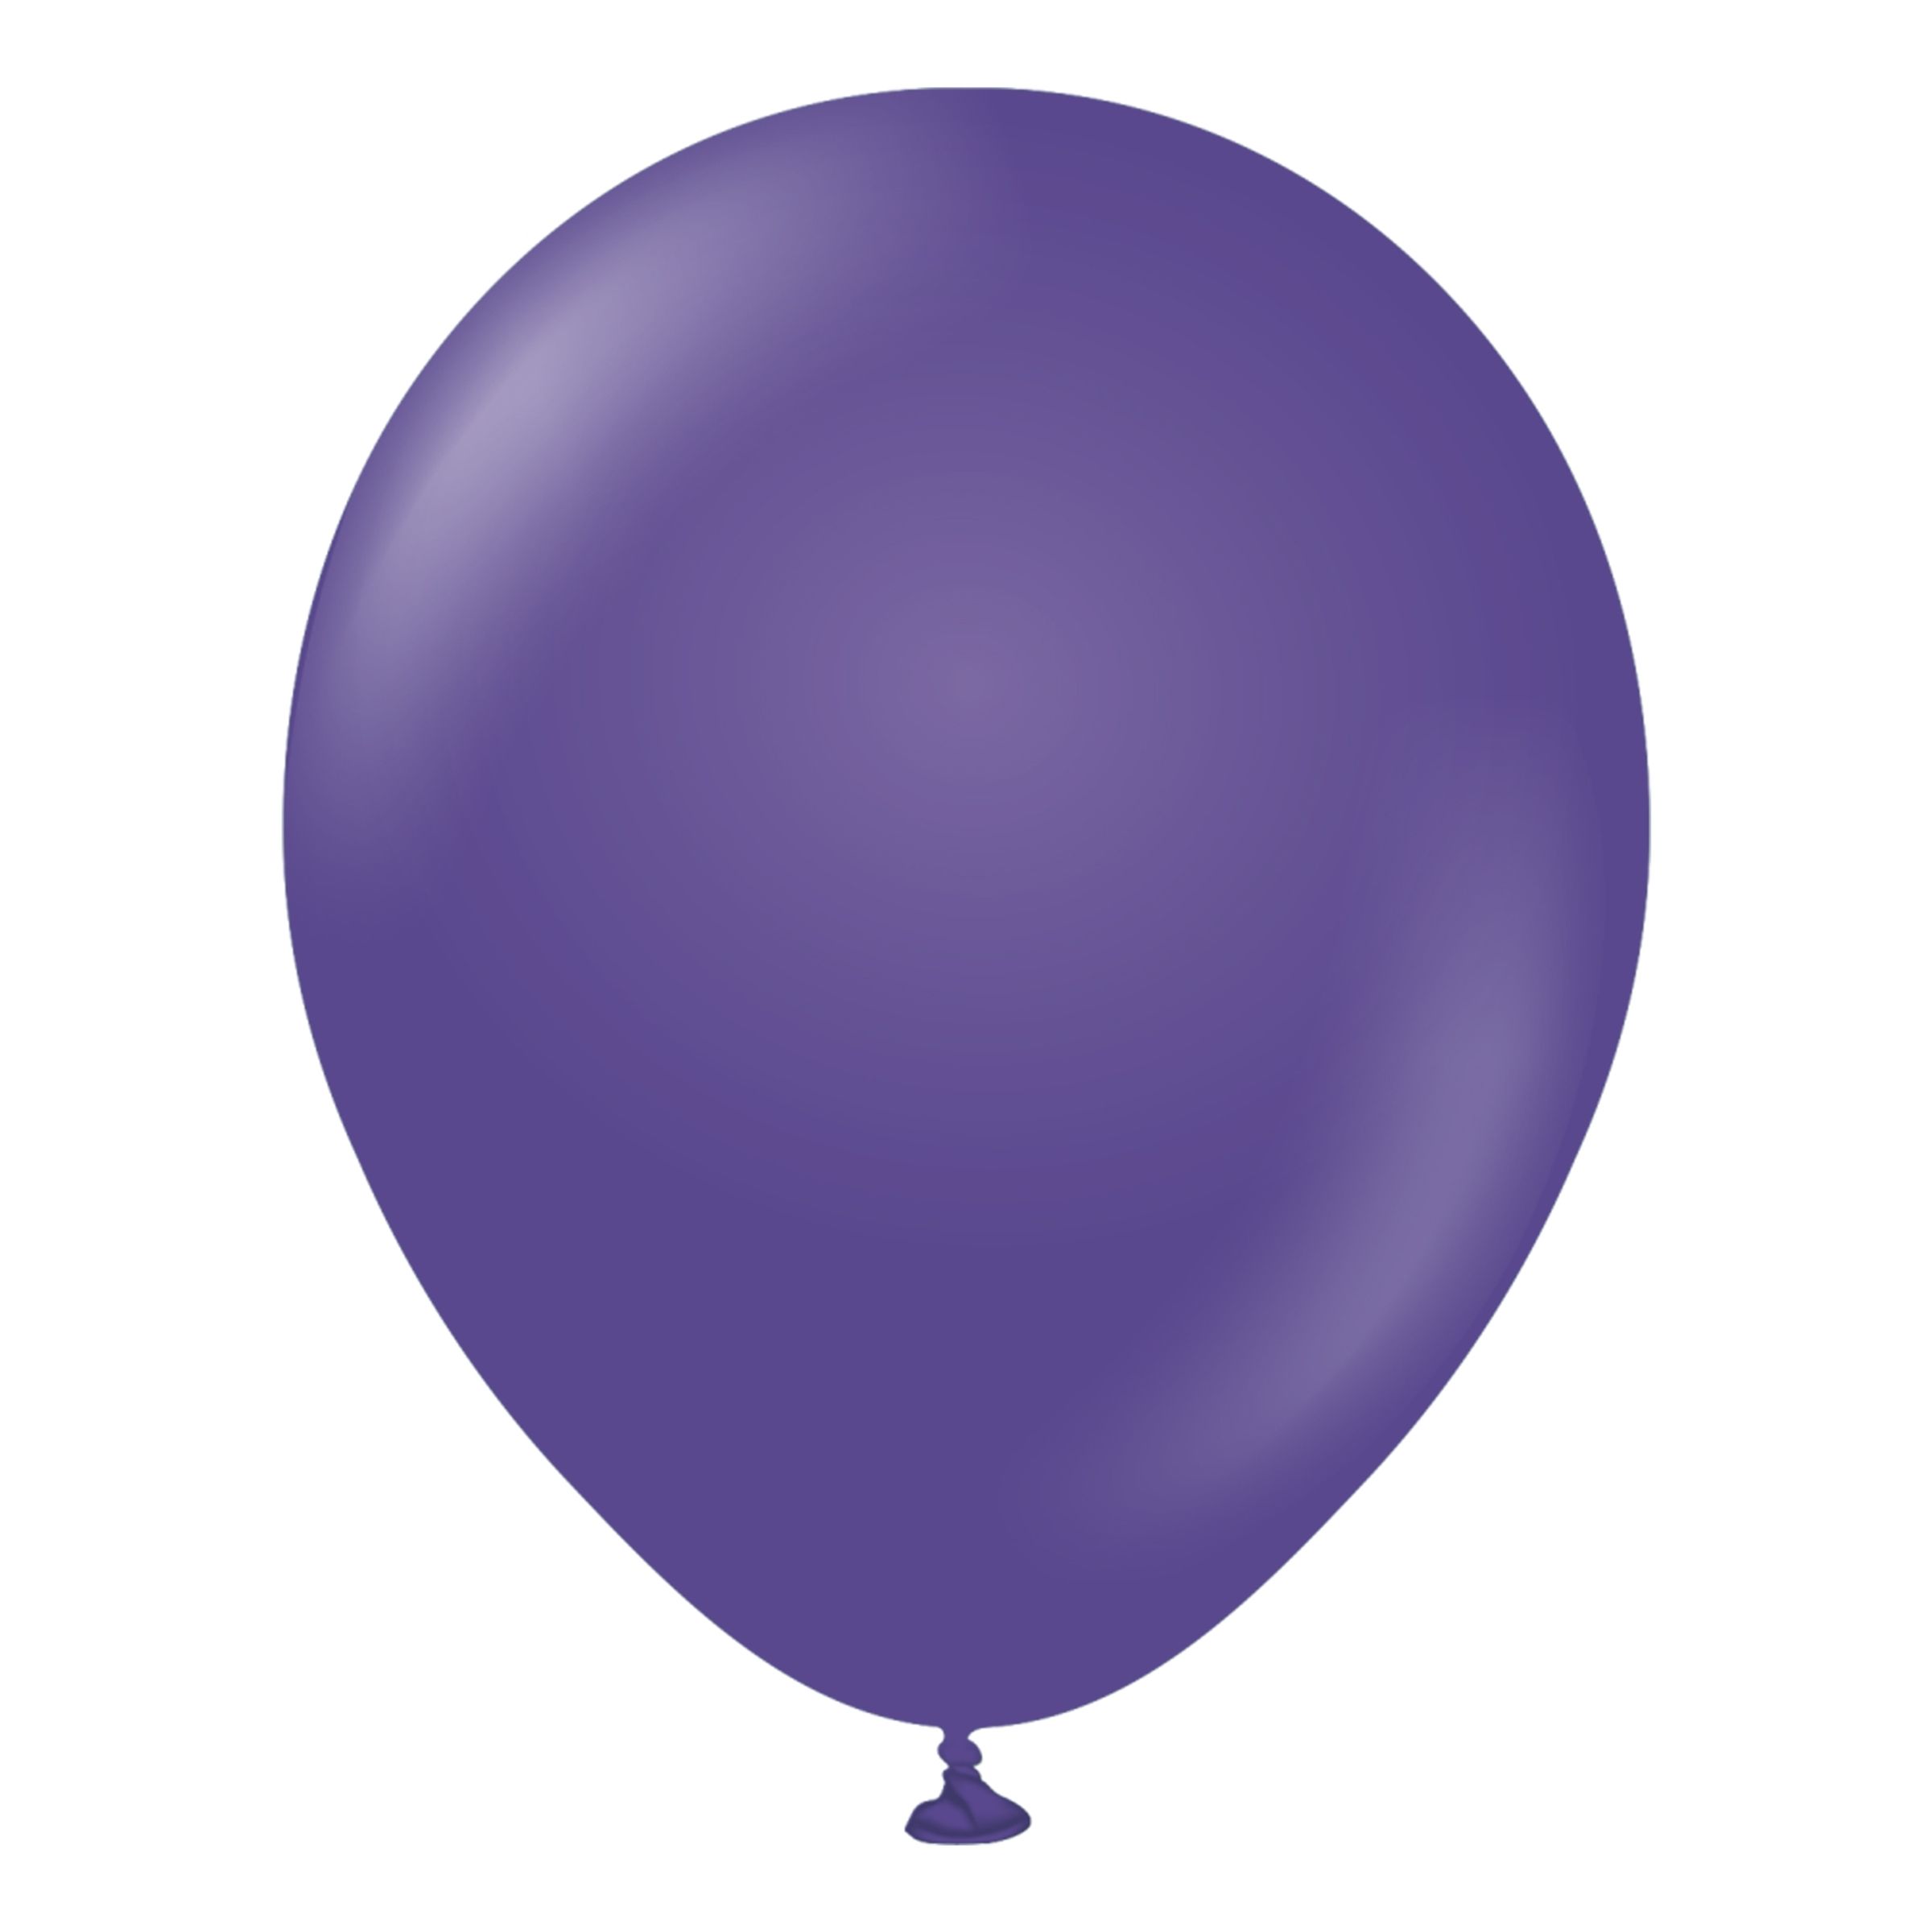 Latexballonger Professional Violet - 10-pack